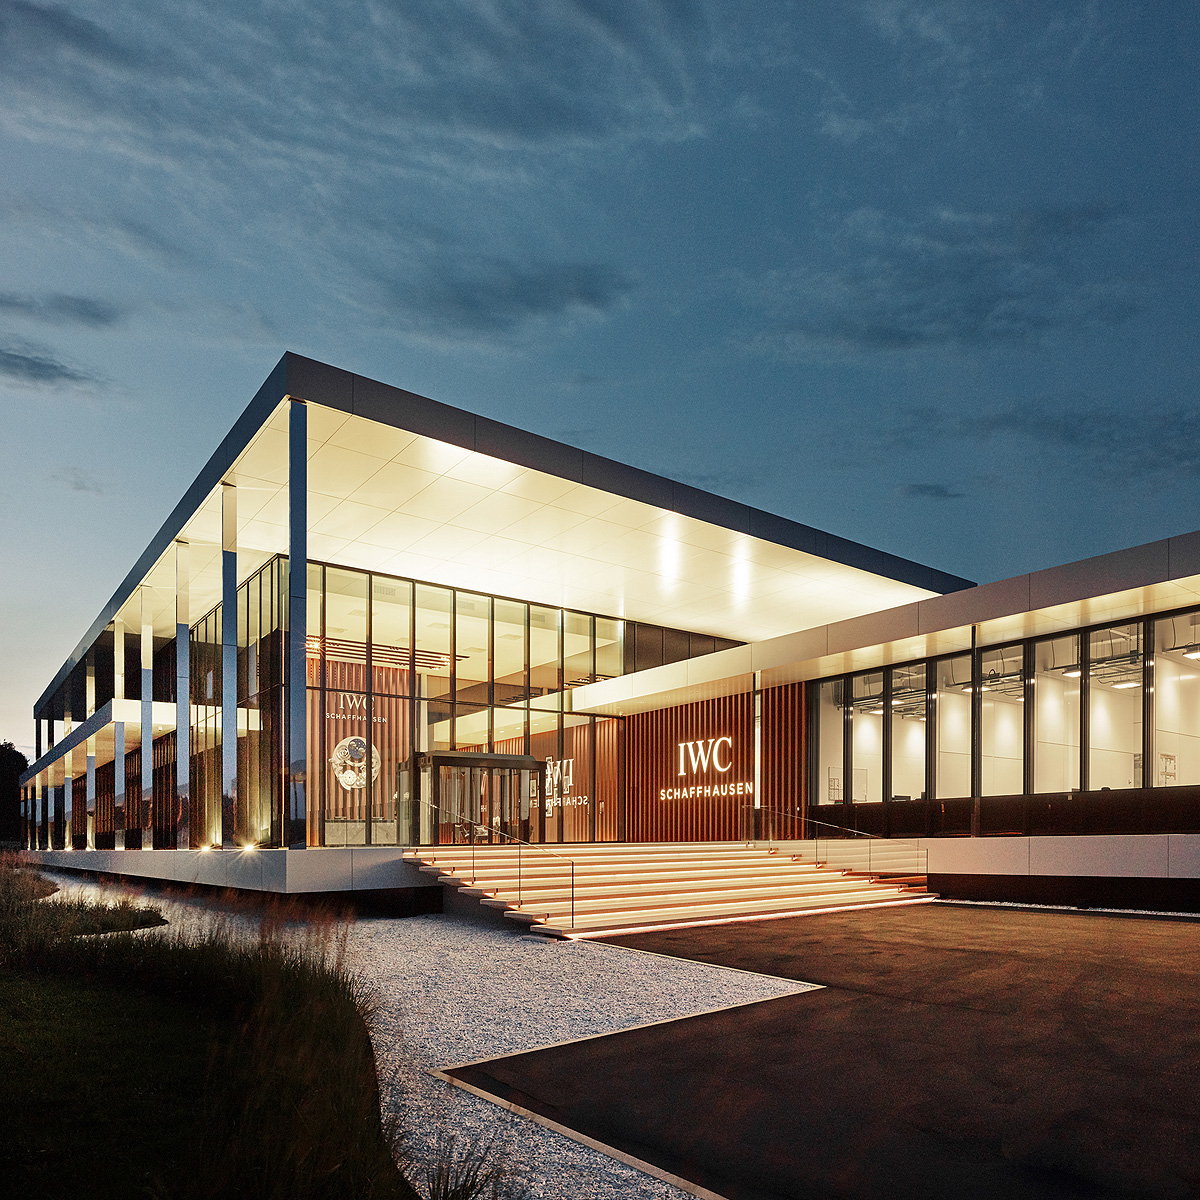 IWC Schaffhausen NJ — Kahn Architecture